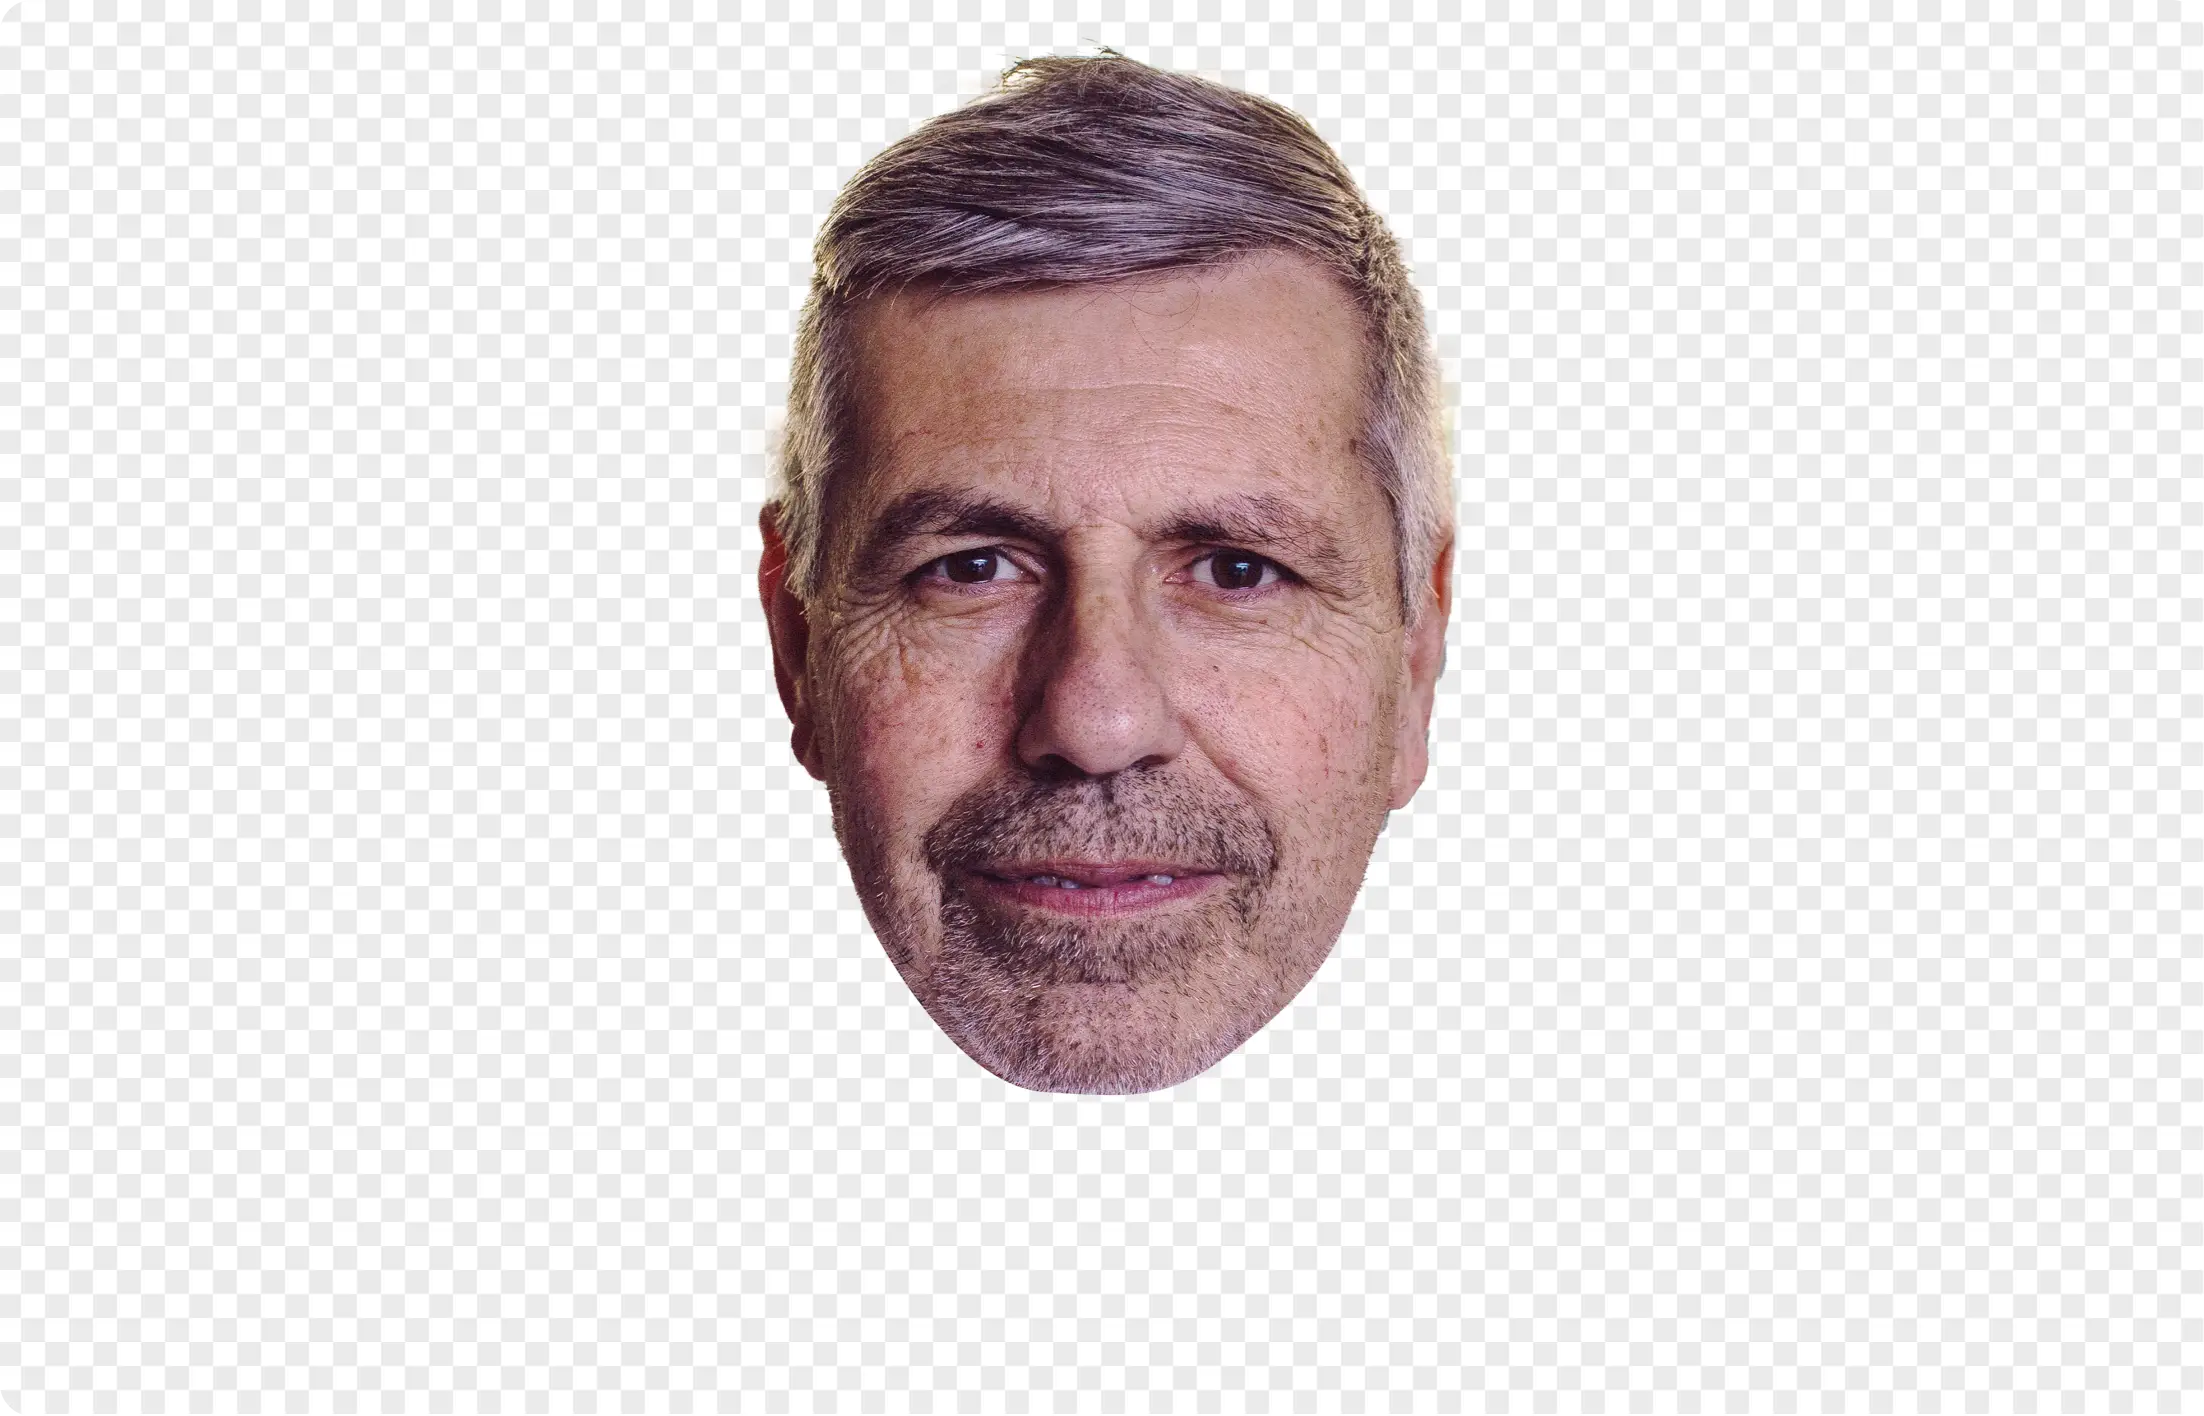 man portrait photo cutout